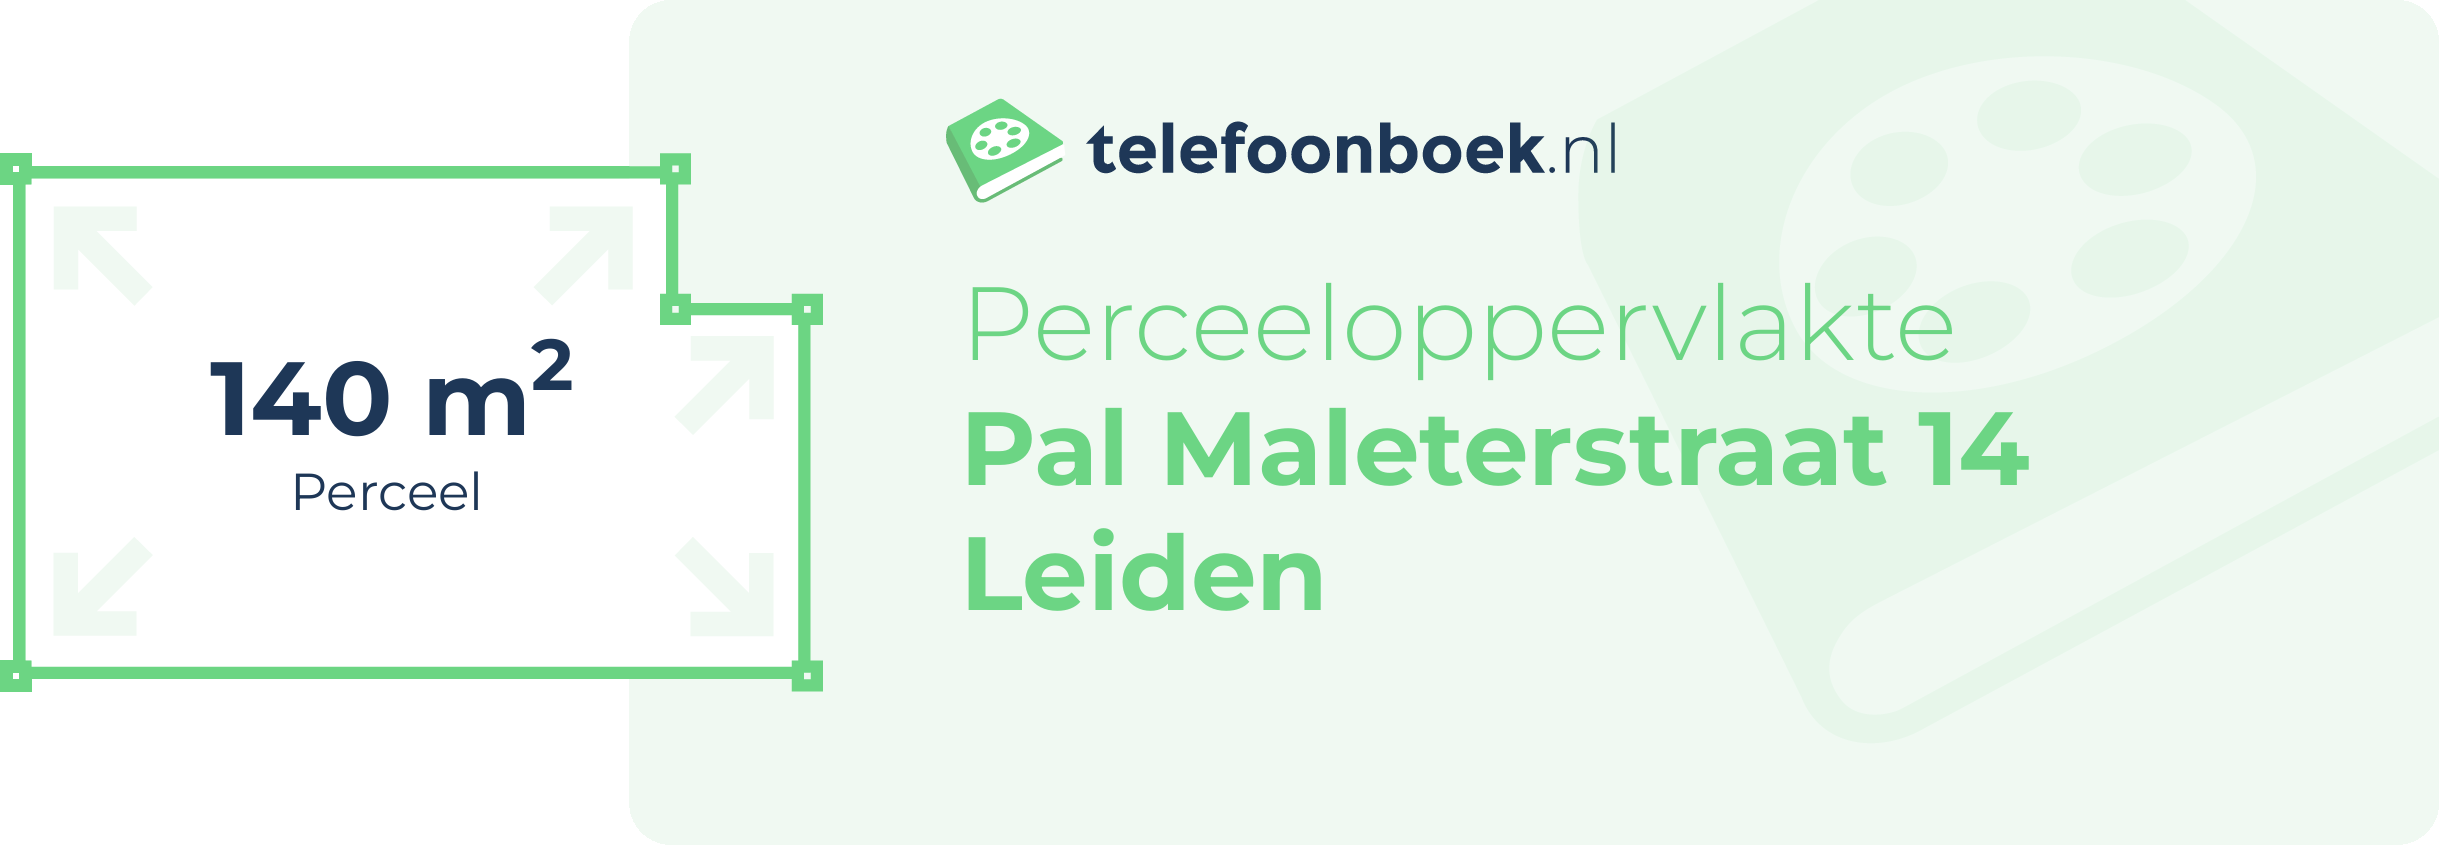 Perceeloppervlakte Pal Maleterstraat 14 Leiden